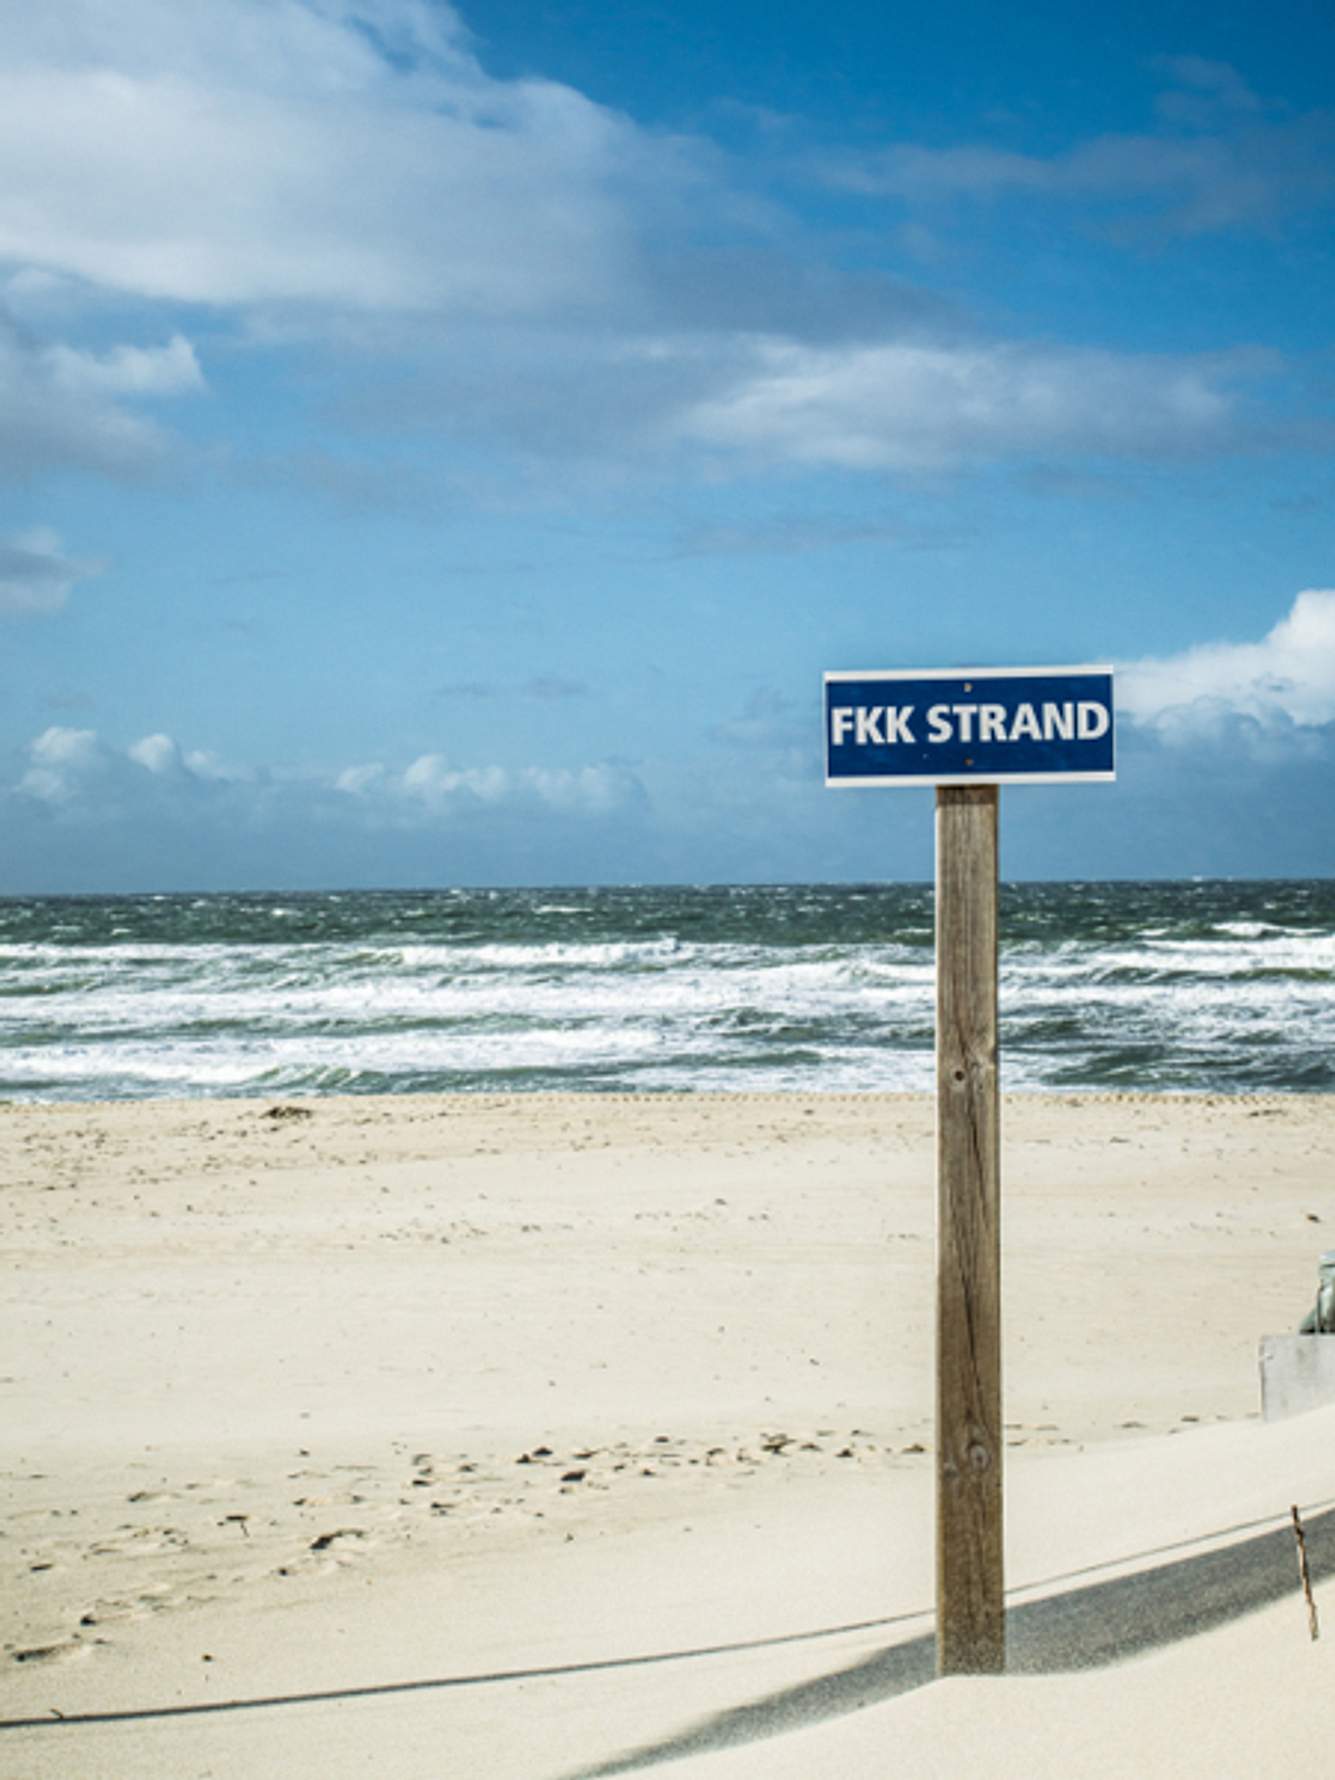 Bilder die schönsten fkk FKK Strand